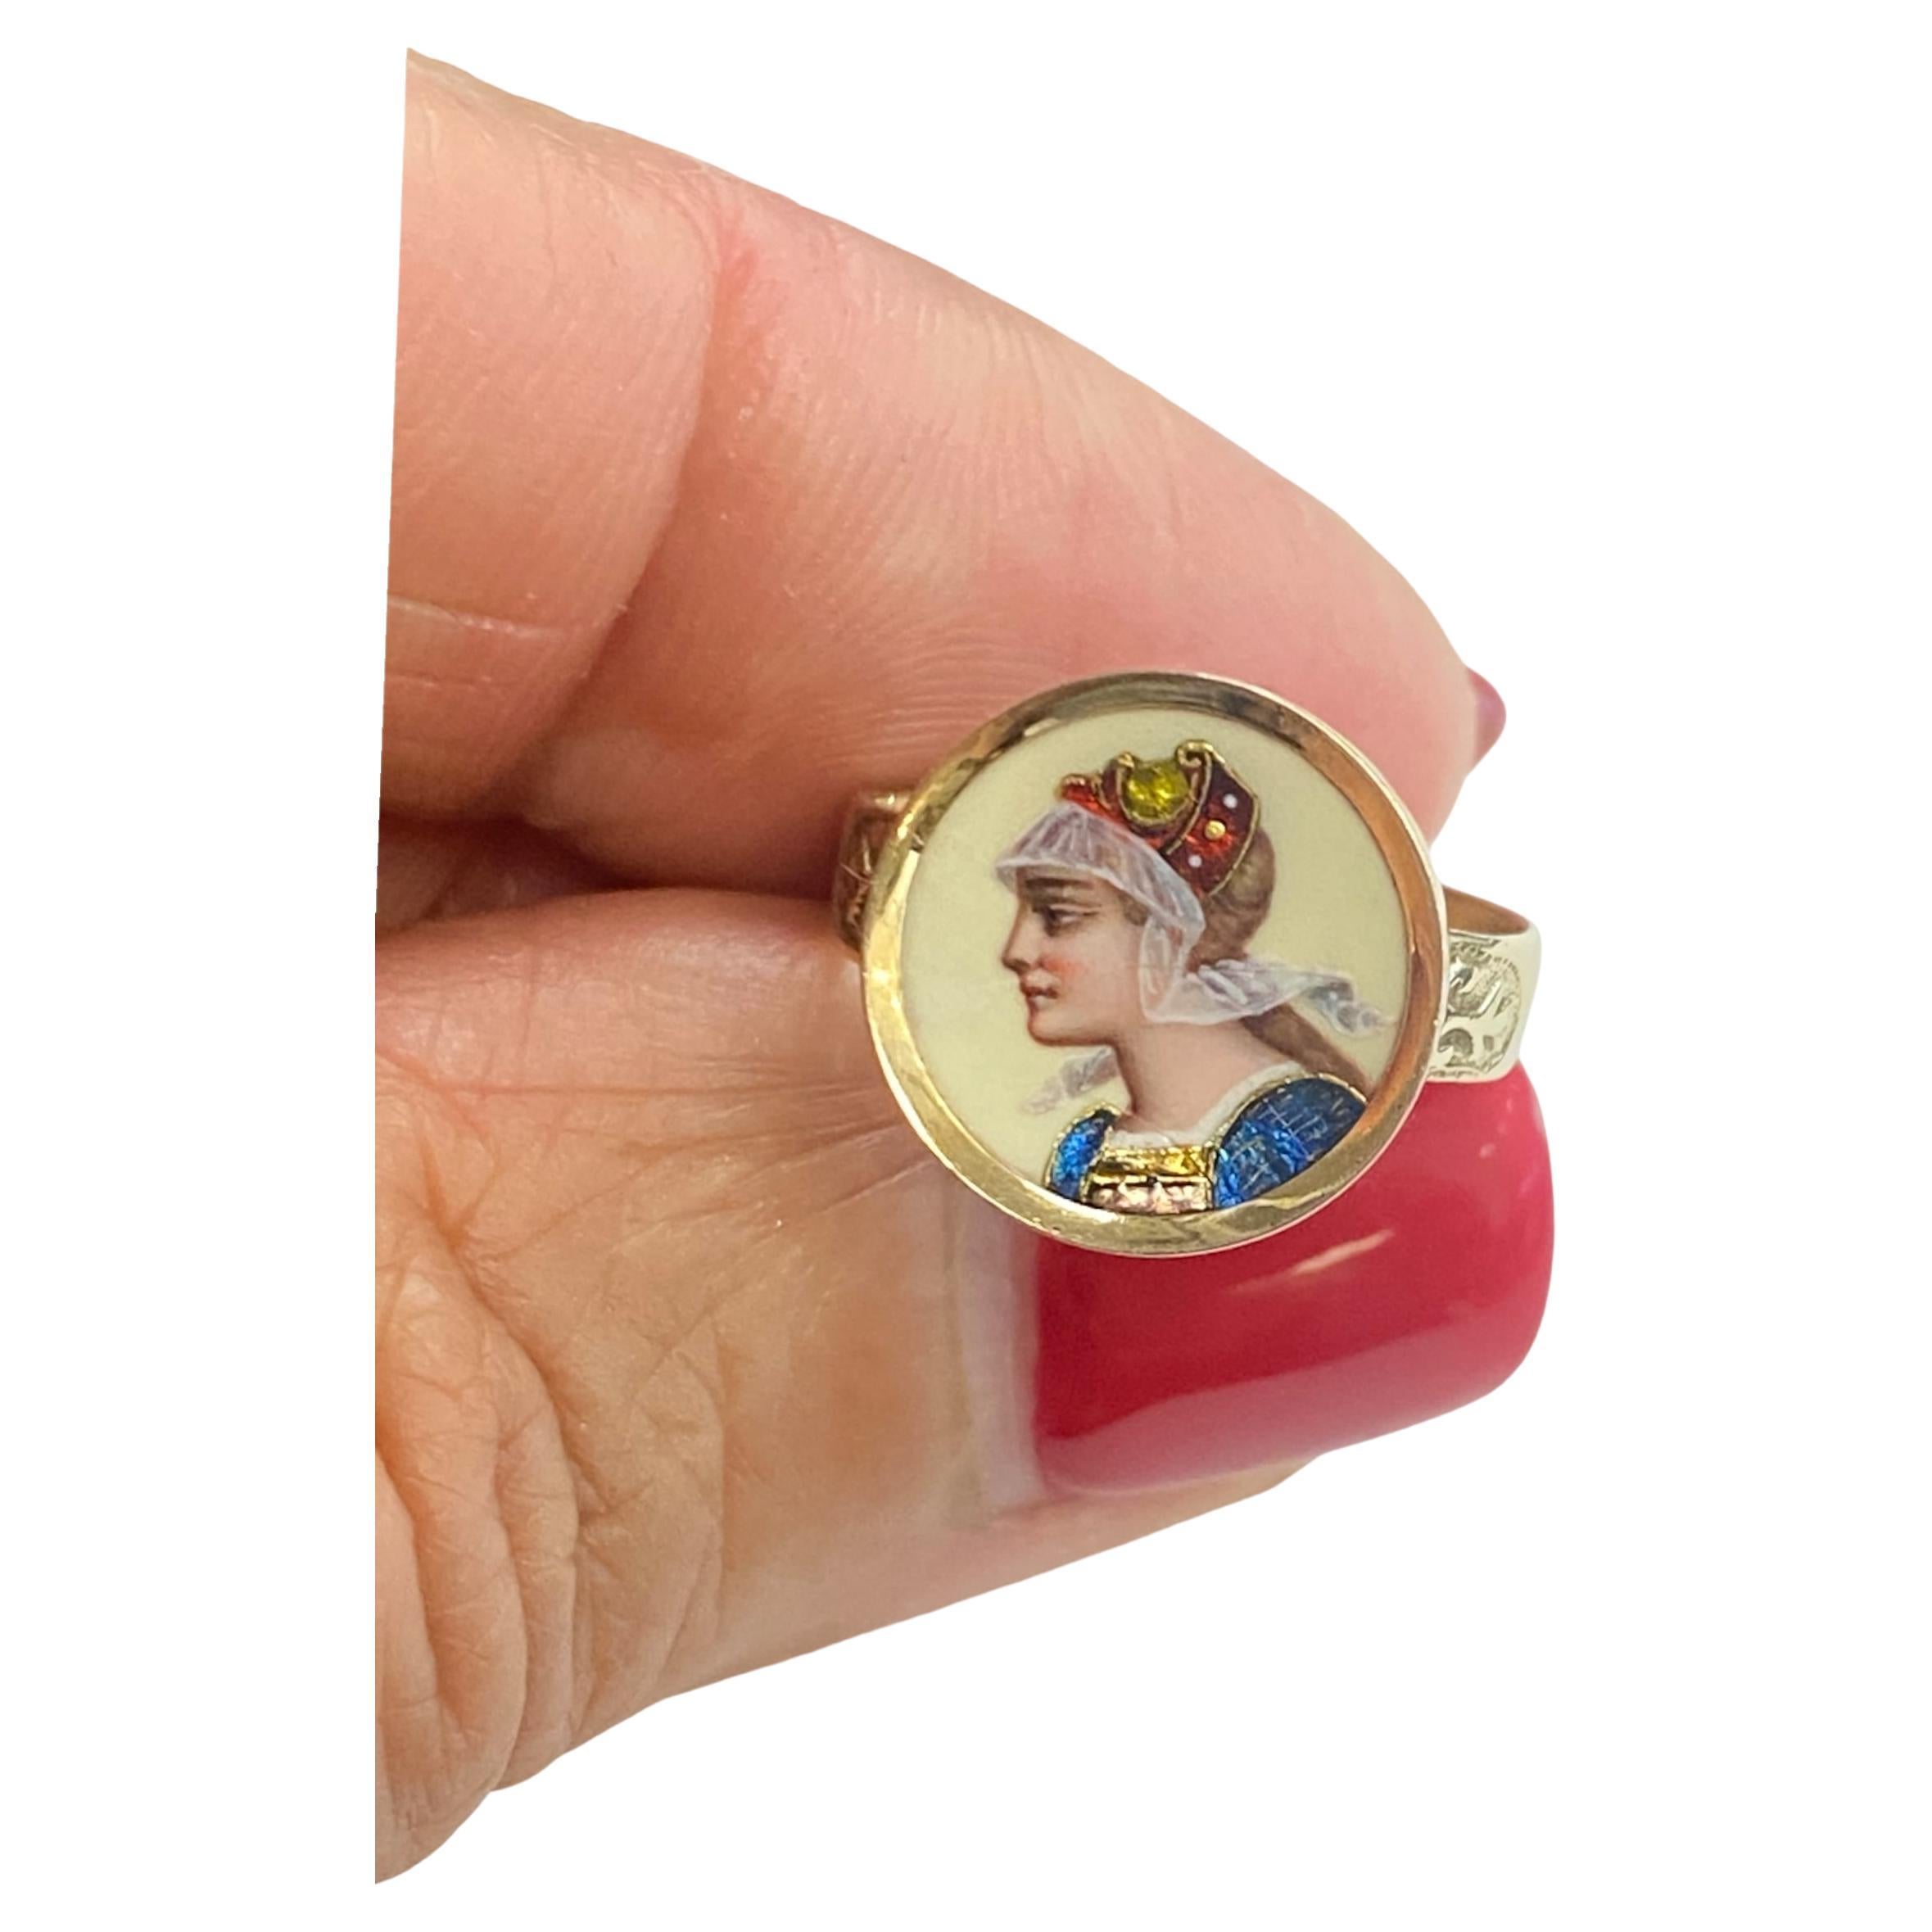 Die handgemalte Renaissance-Kamee ist in einem Ring aus 14-karätigem Gelbgold eingefasst. Die Kamee zeichnet sich durch brillante Farben und Farbflimmern aus, was ihr ein reiches und einzigartiges Finish verleiht. Der Gesamtdurchmesser des Rings